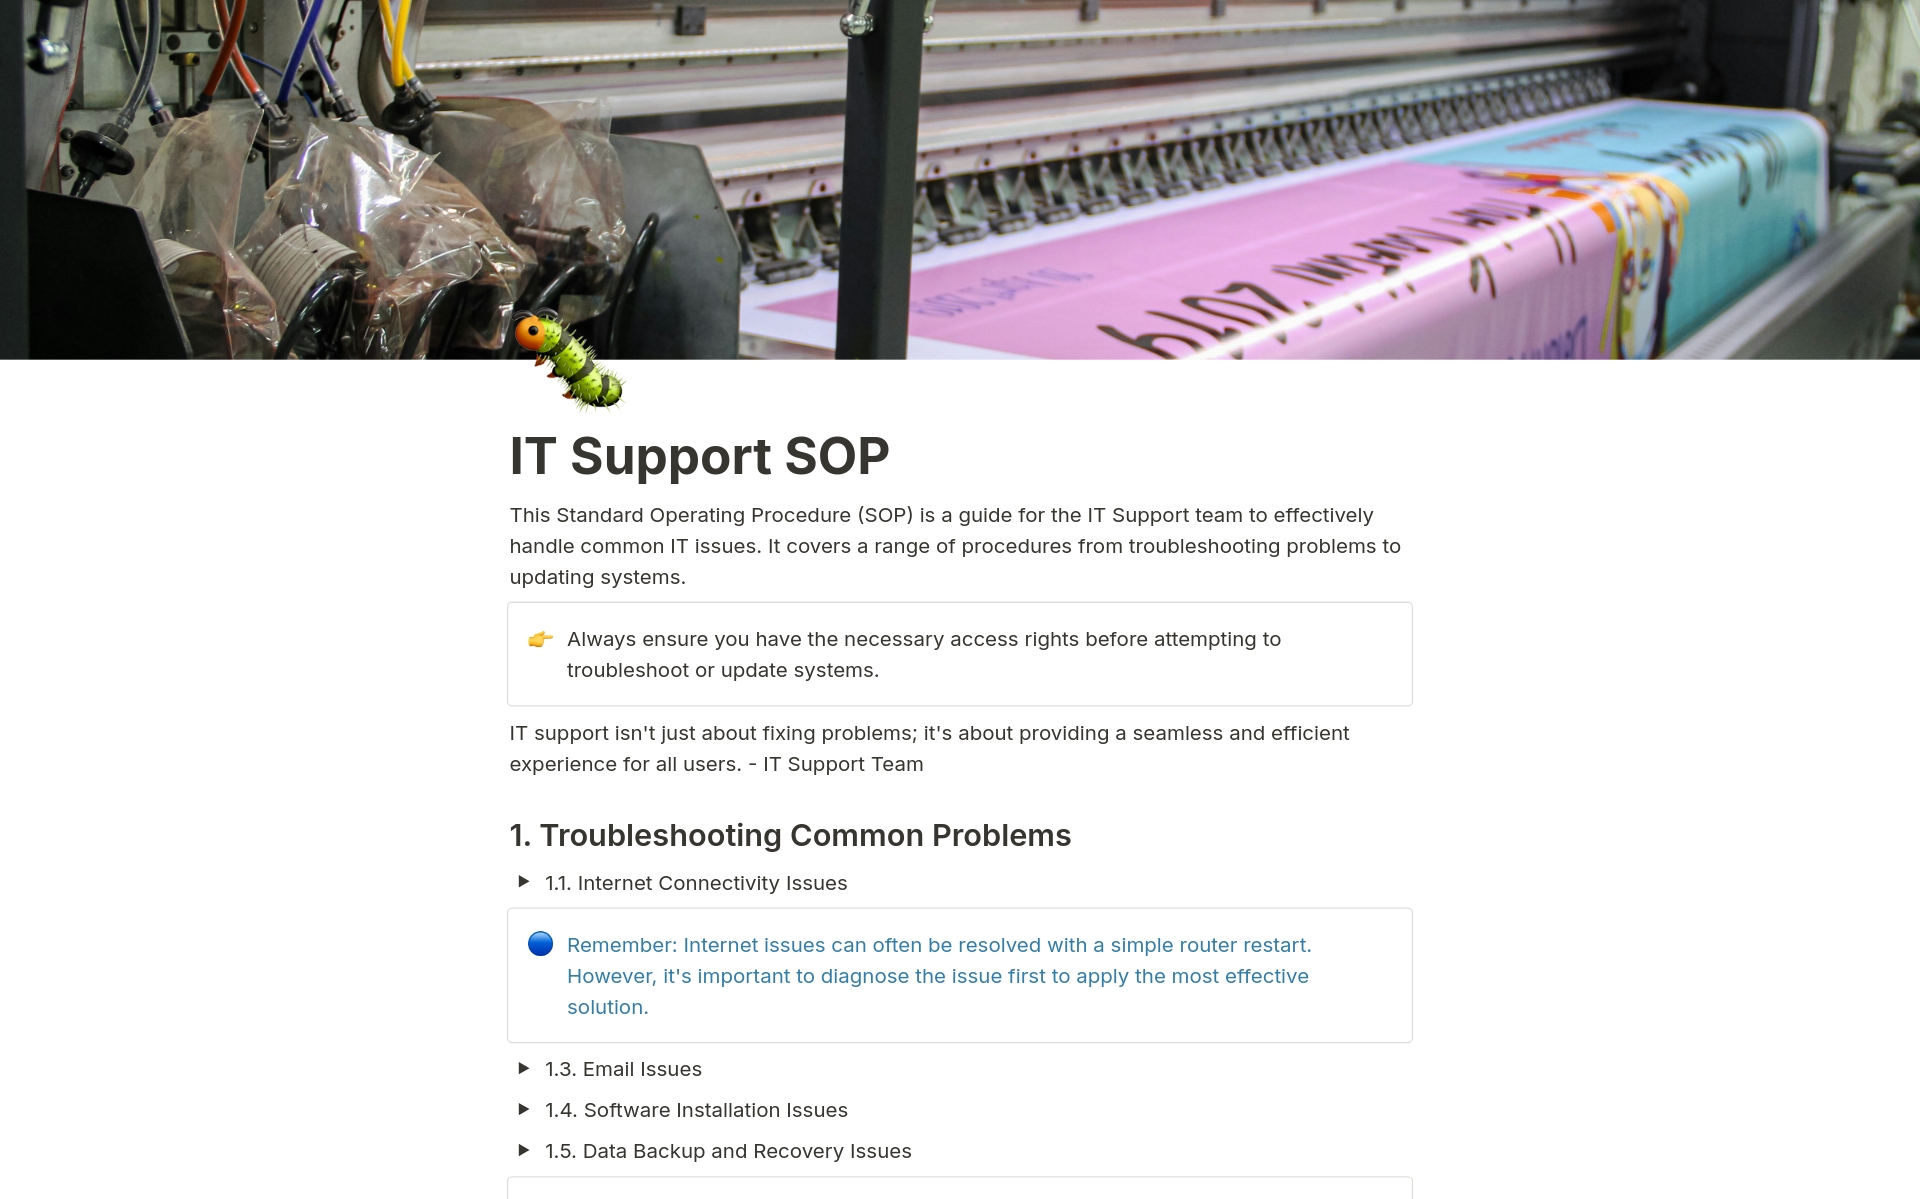 Vista previa de una plantilla para IT Support SOP